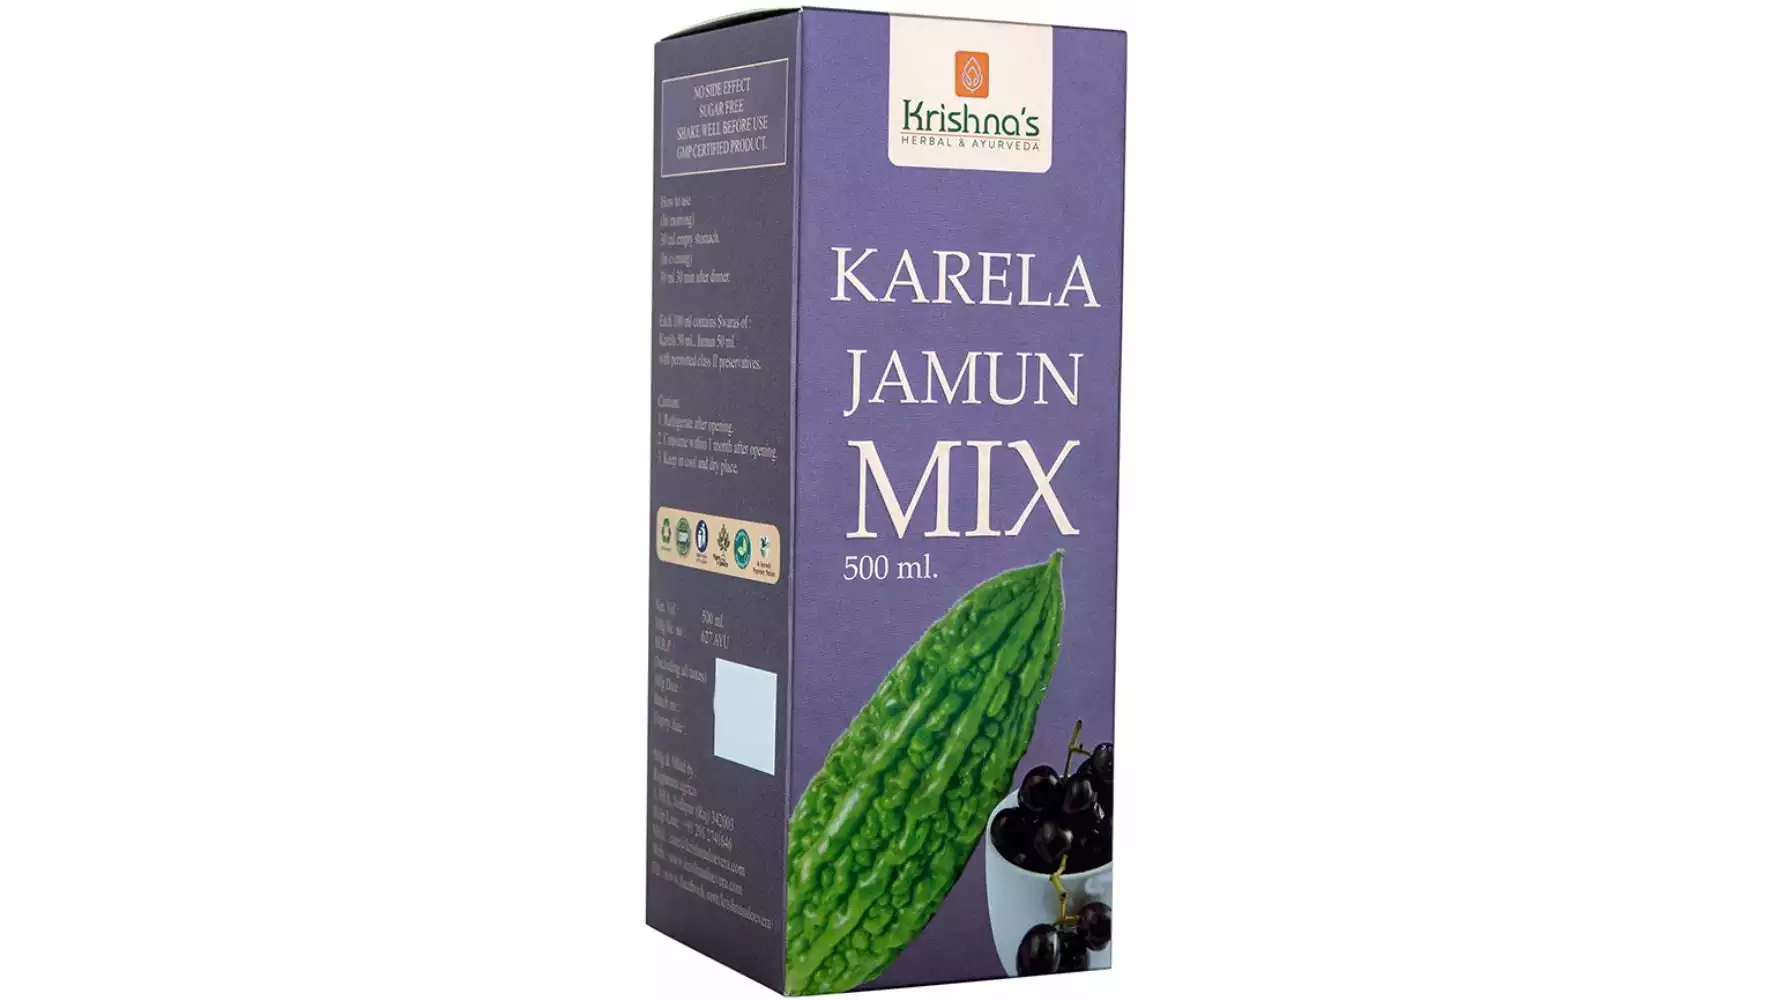 Krishna's Karela Jamun Mix (500ml)